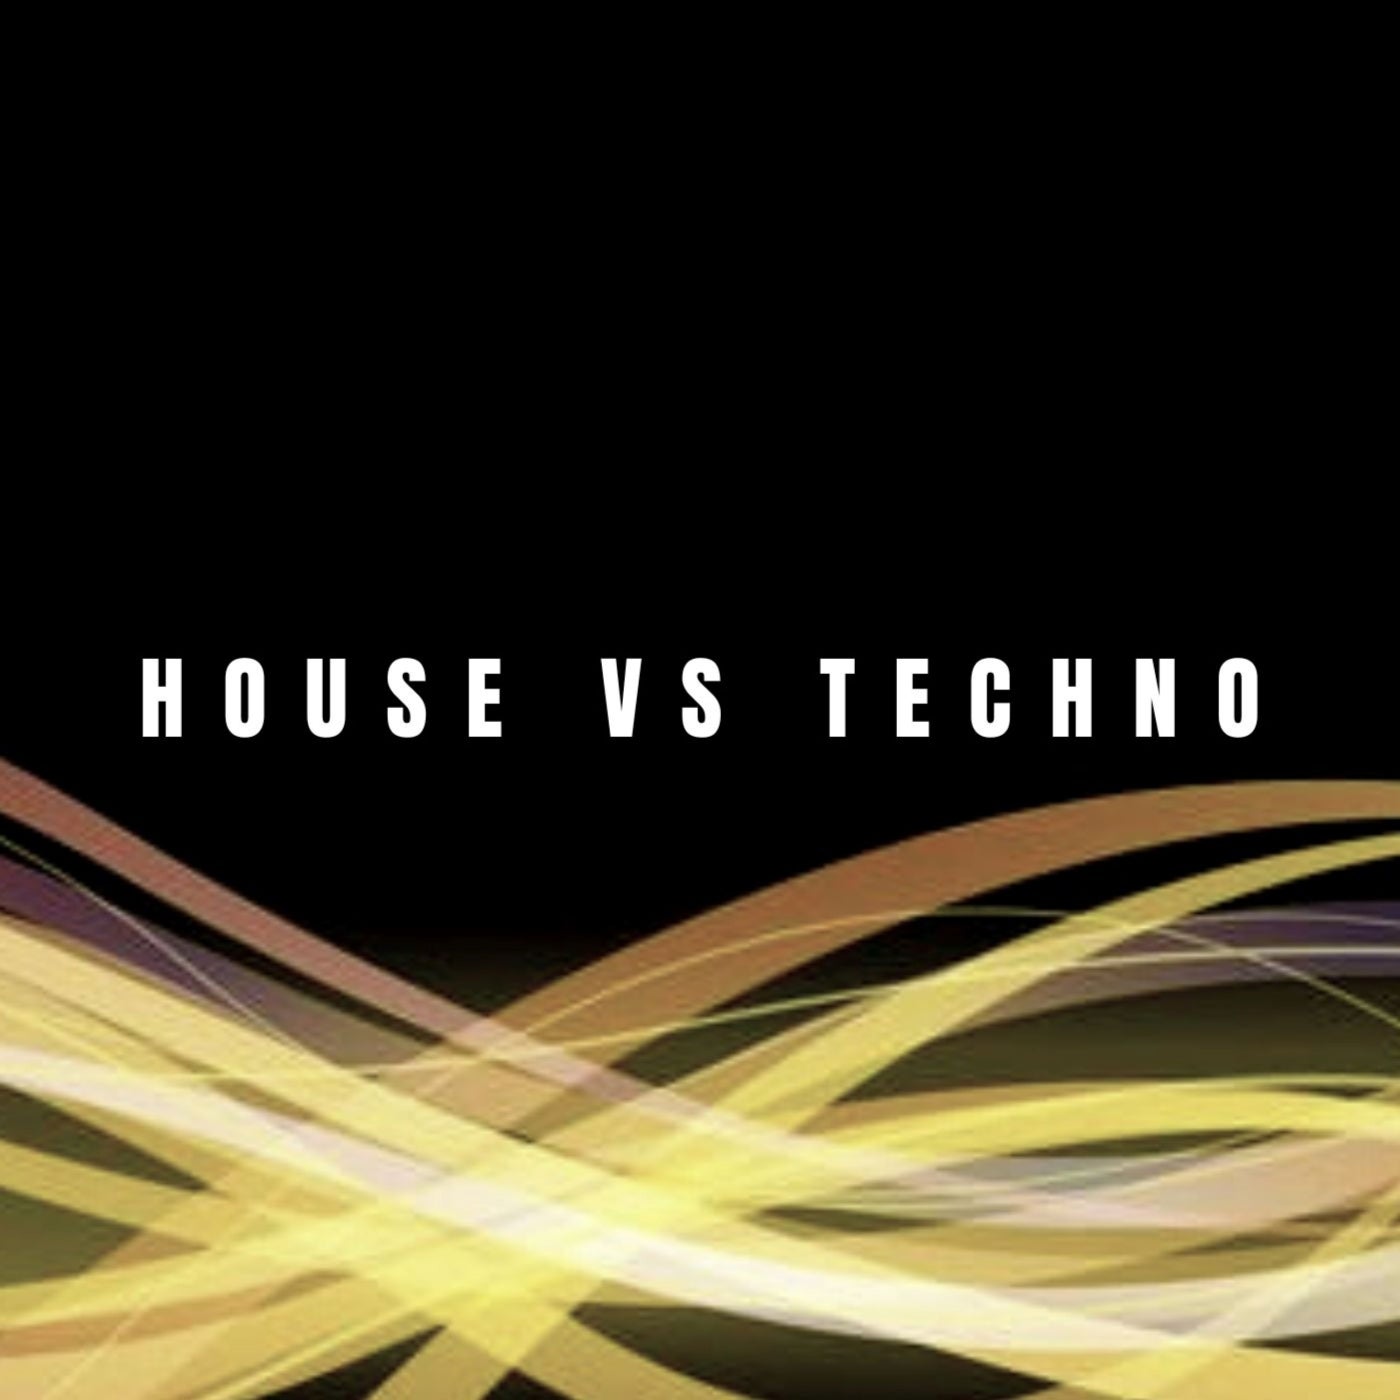 House vs Techno